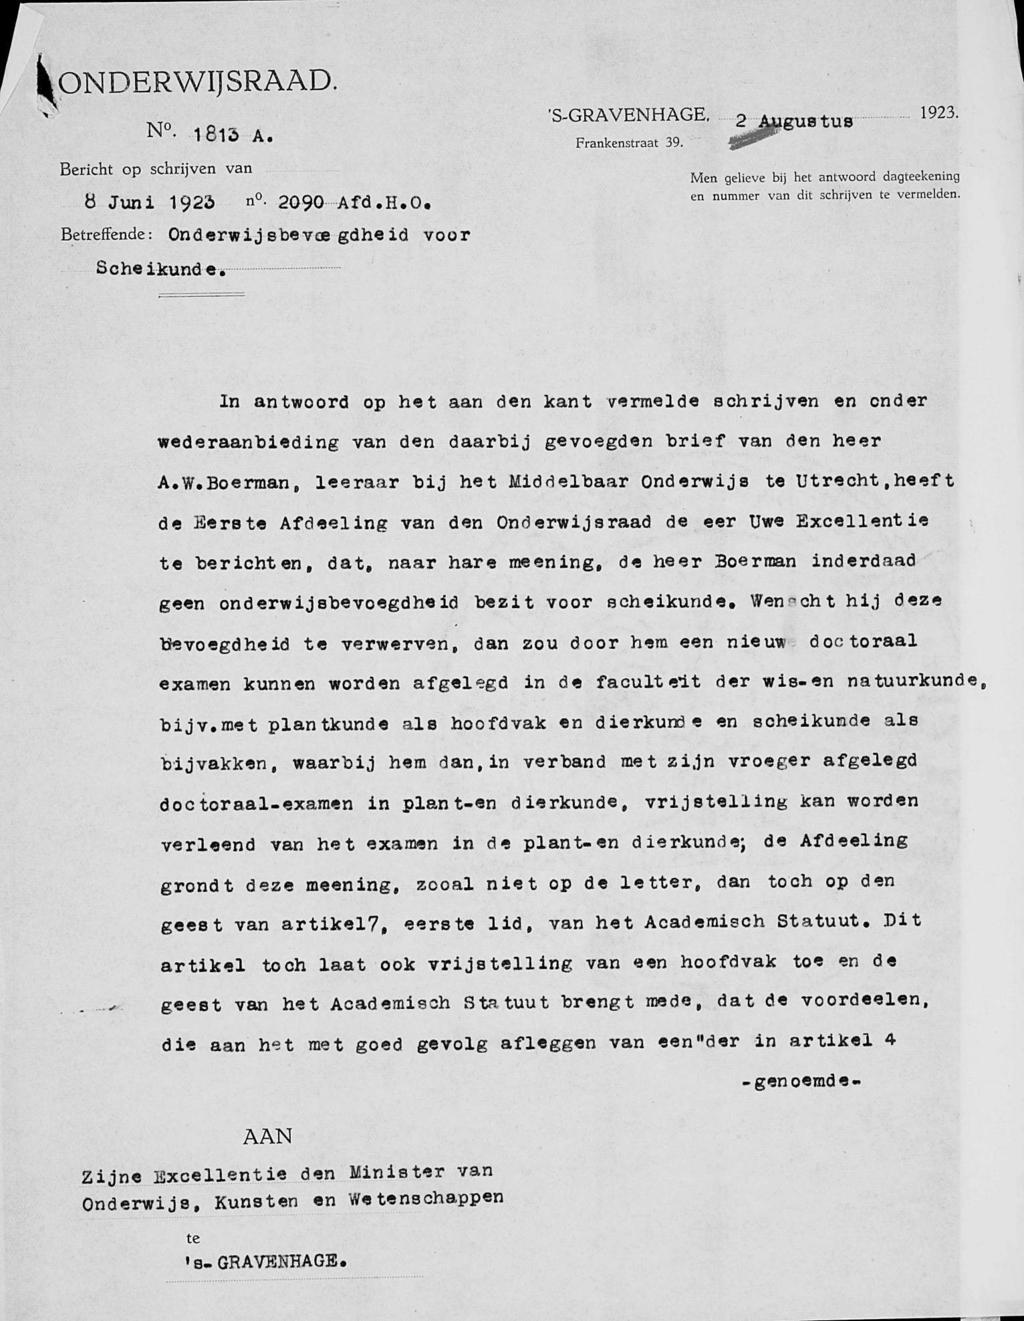 ONDERWIJSRAAD. N..1813 A. Bericht op schrijven van 8 Juni 1925 n. 2090 Afd.H.O. Betreffende : On â erw i j sbe v ee gdhe id voor Scheikunde, 'S-GRAVENHAGE Frankenstraat 39.